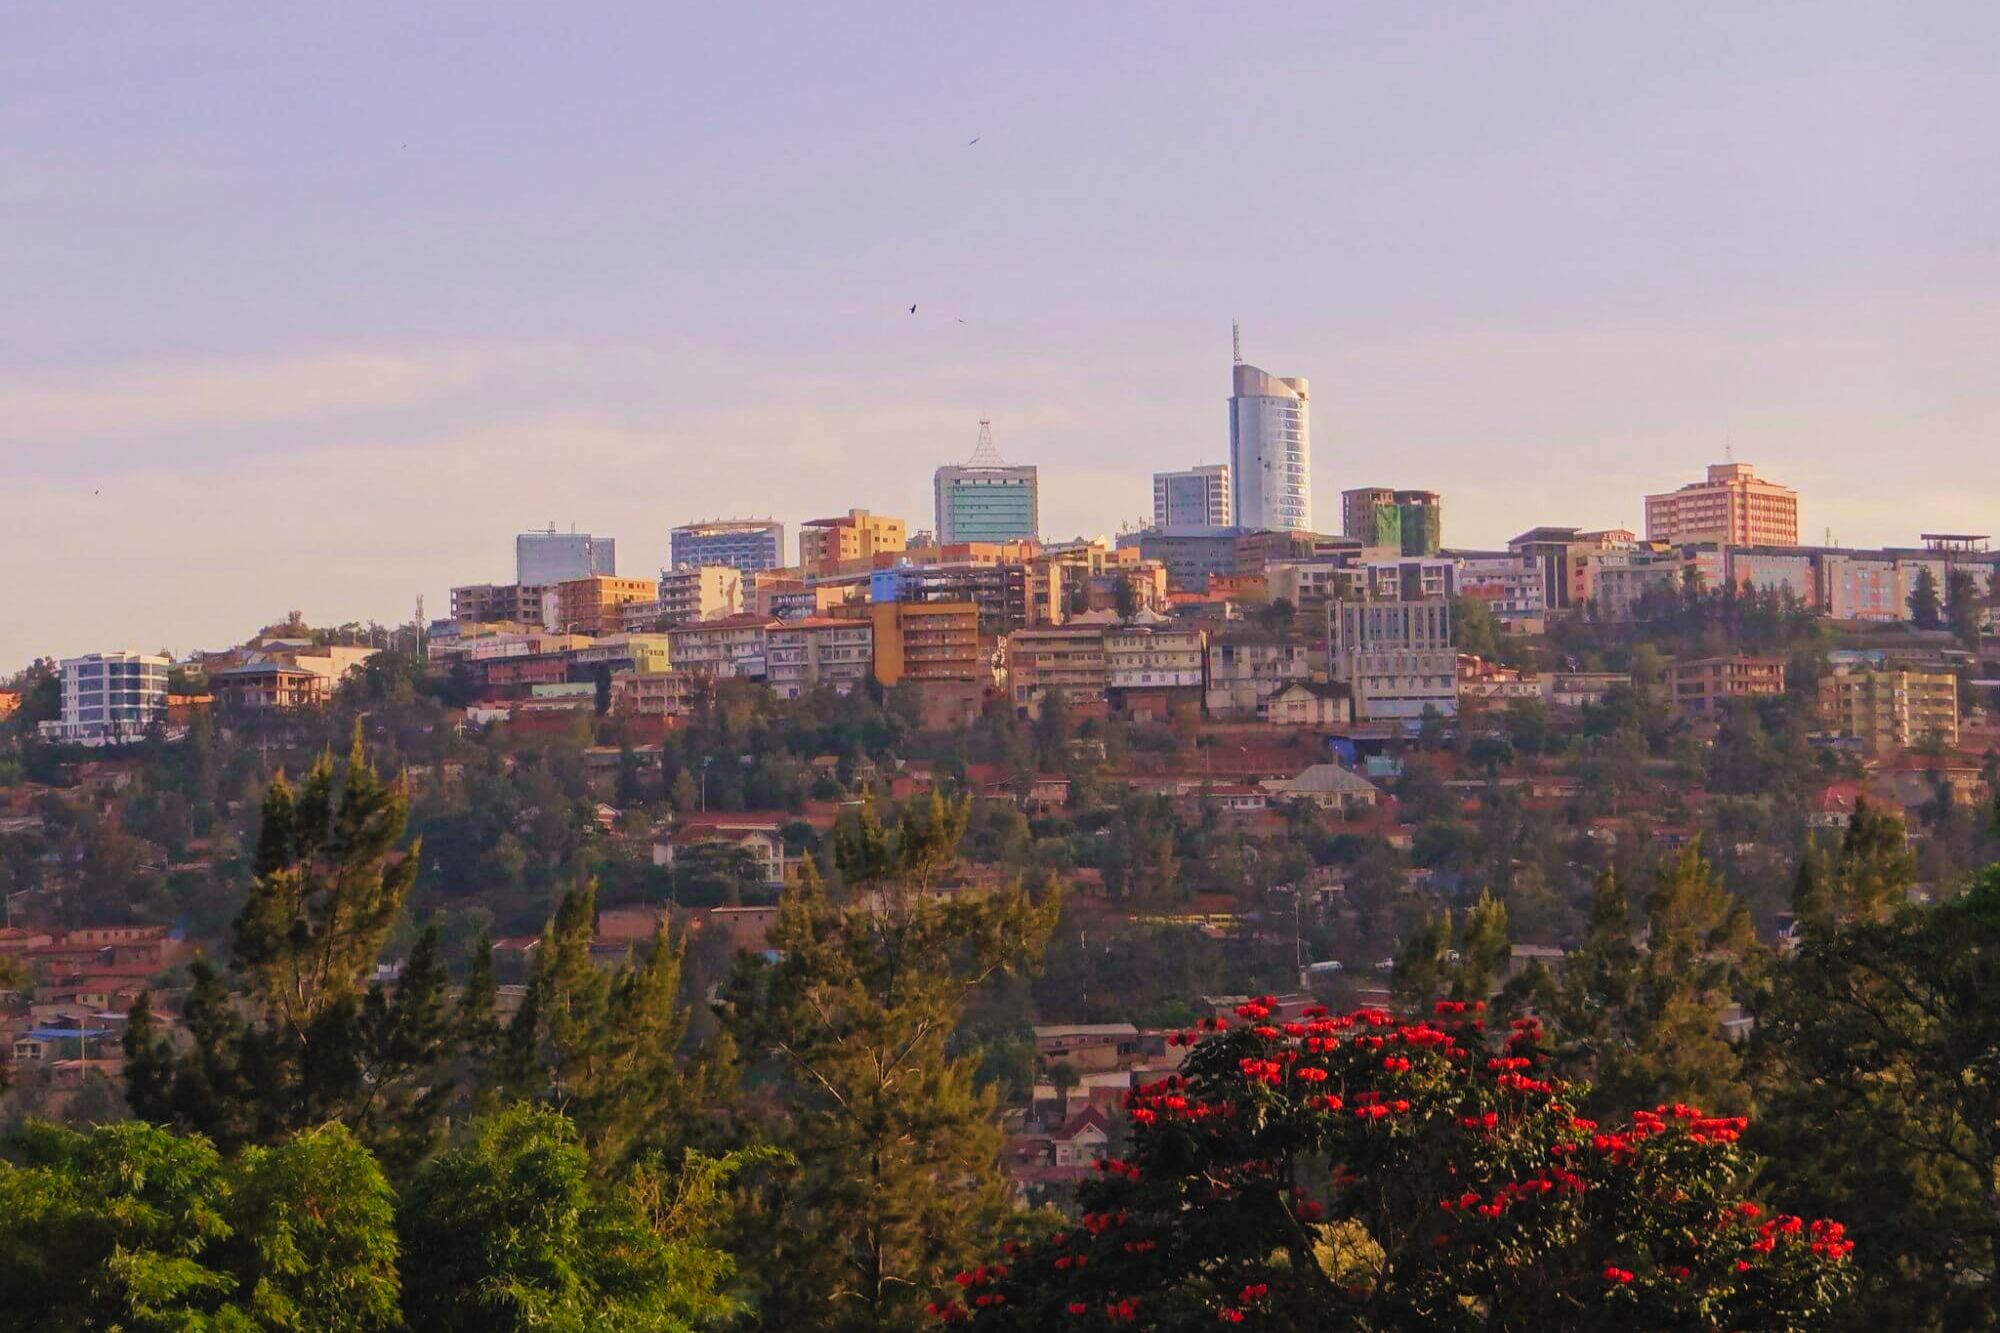 Erdbeernaut-Kigali (4) - 